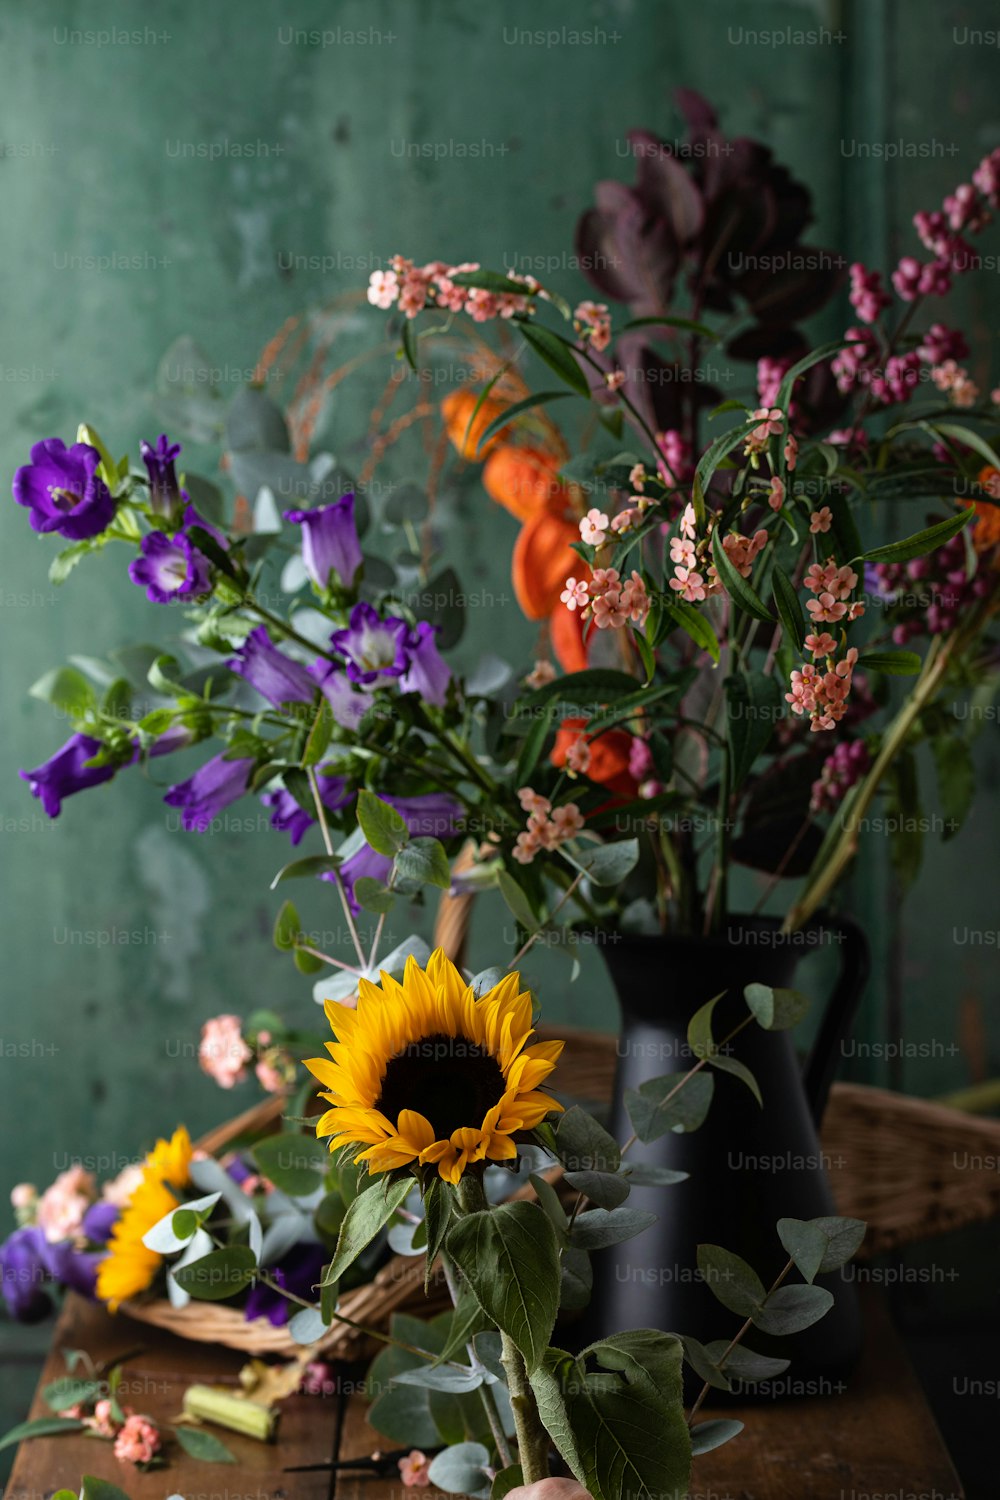 un tavolo di legno sormontato da un vaso pieno di fiori